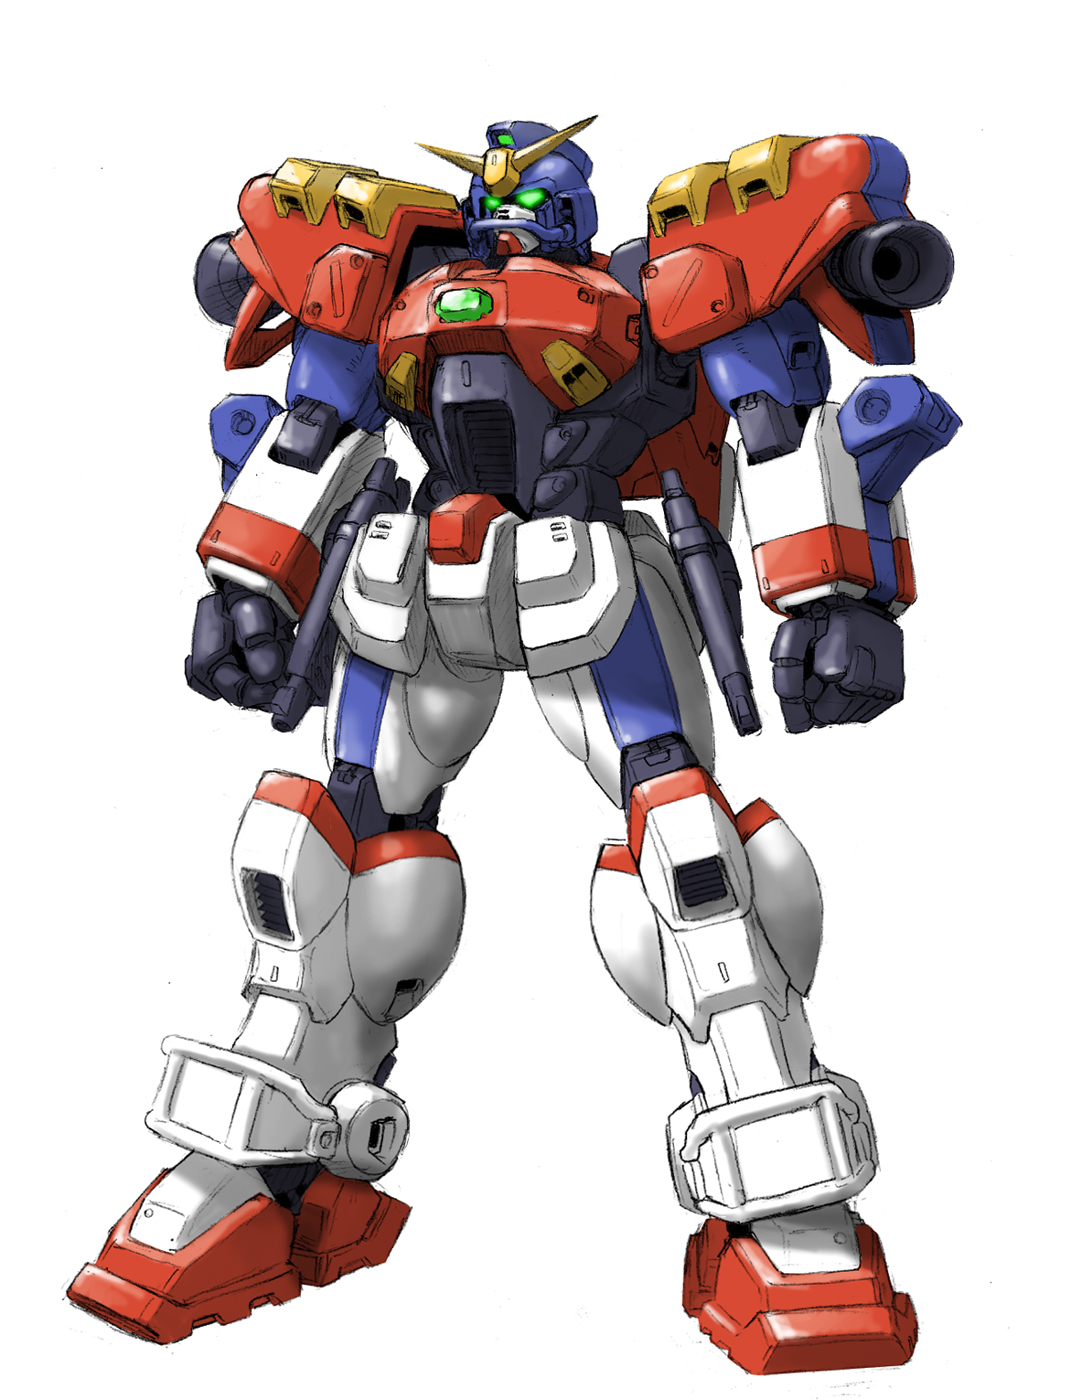 Anime 1071x1400 Gundam Maxter anime mechs Super Robot Taisen Mobile Fighter G Gundam Gundam artwork digital art fan art